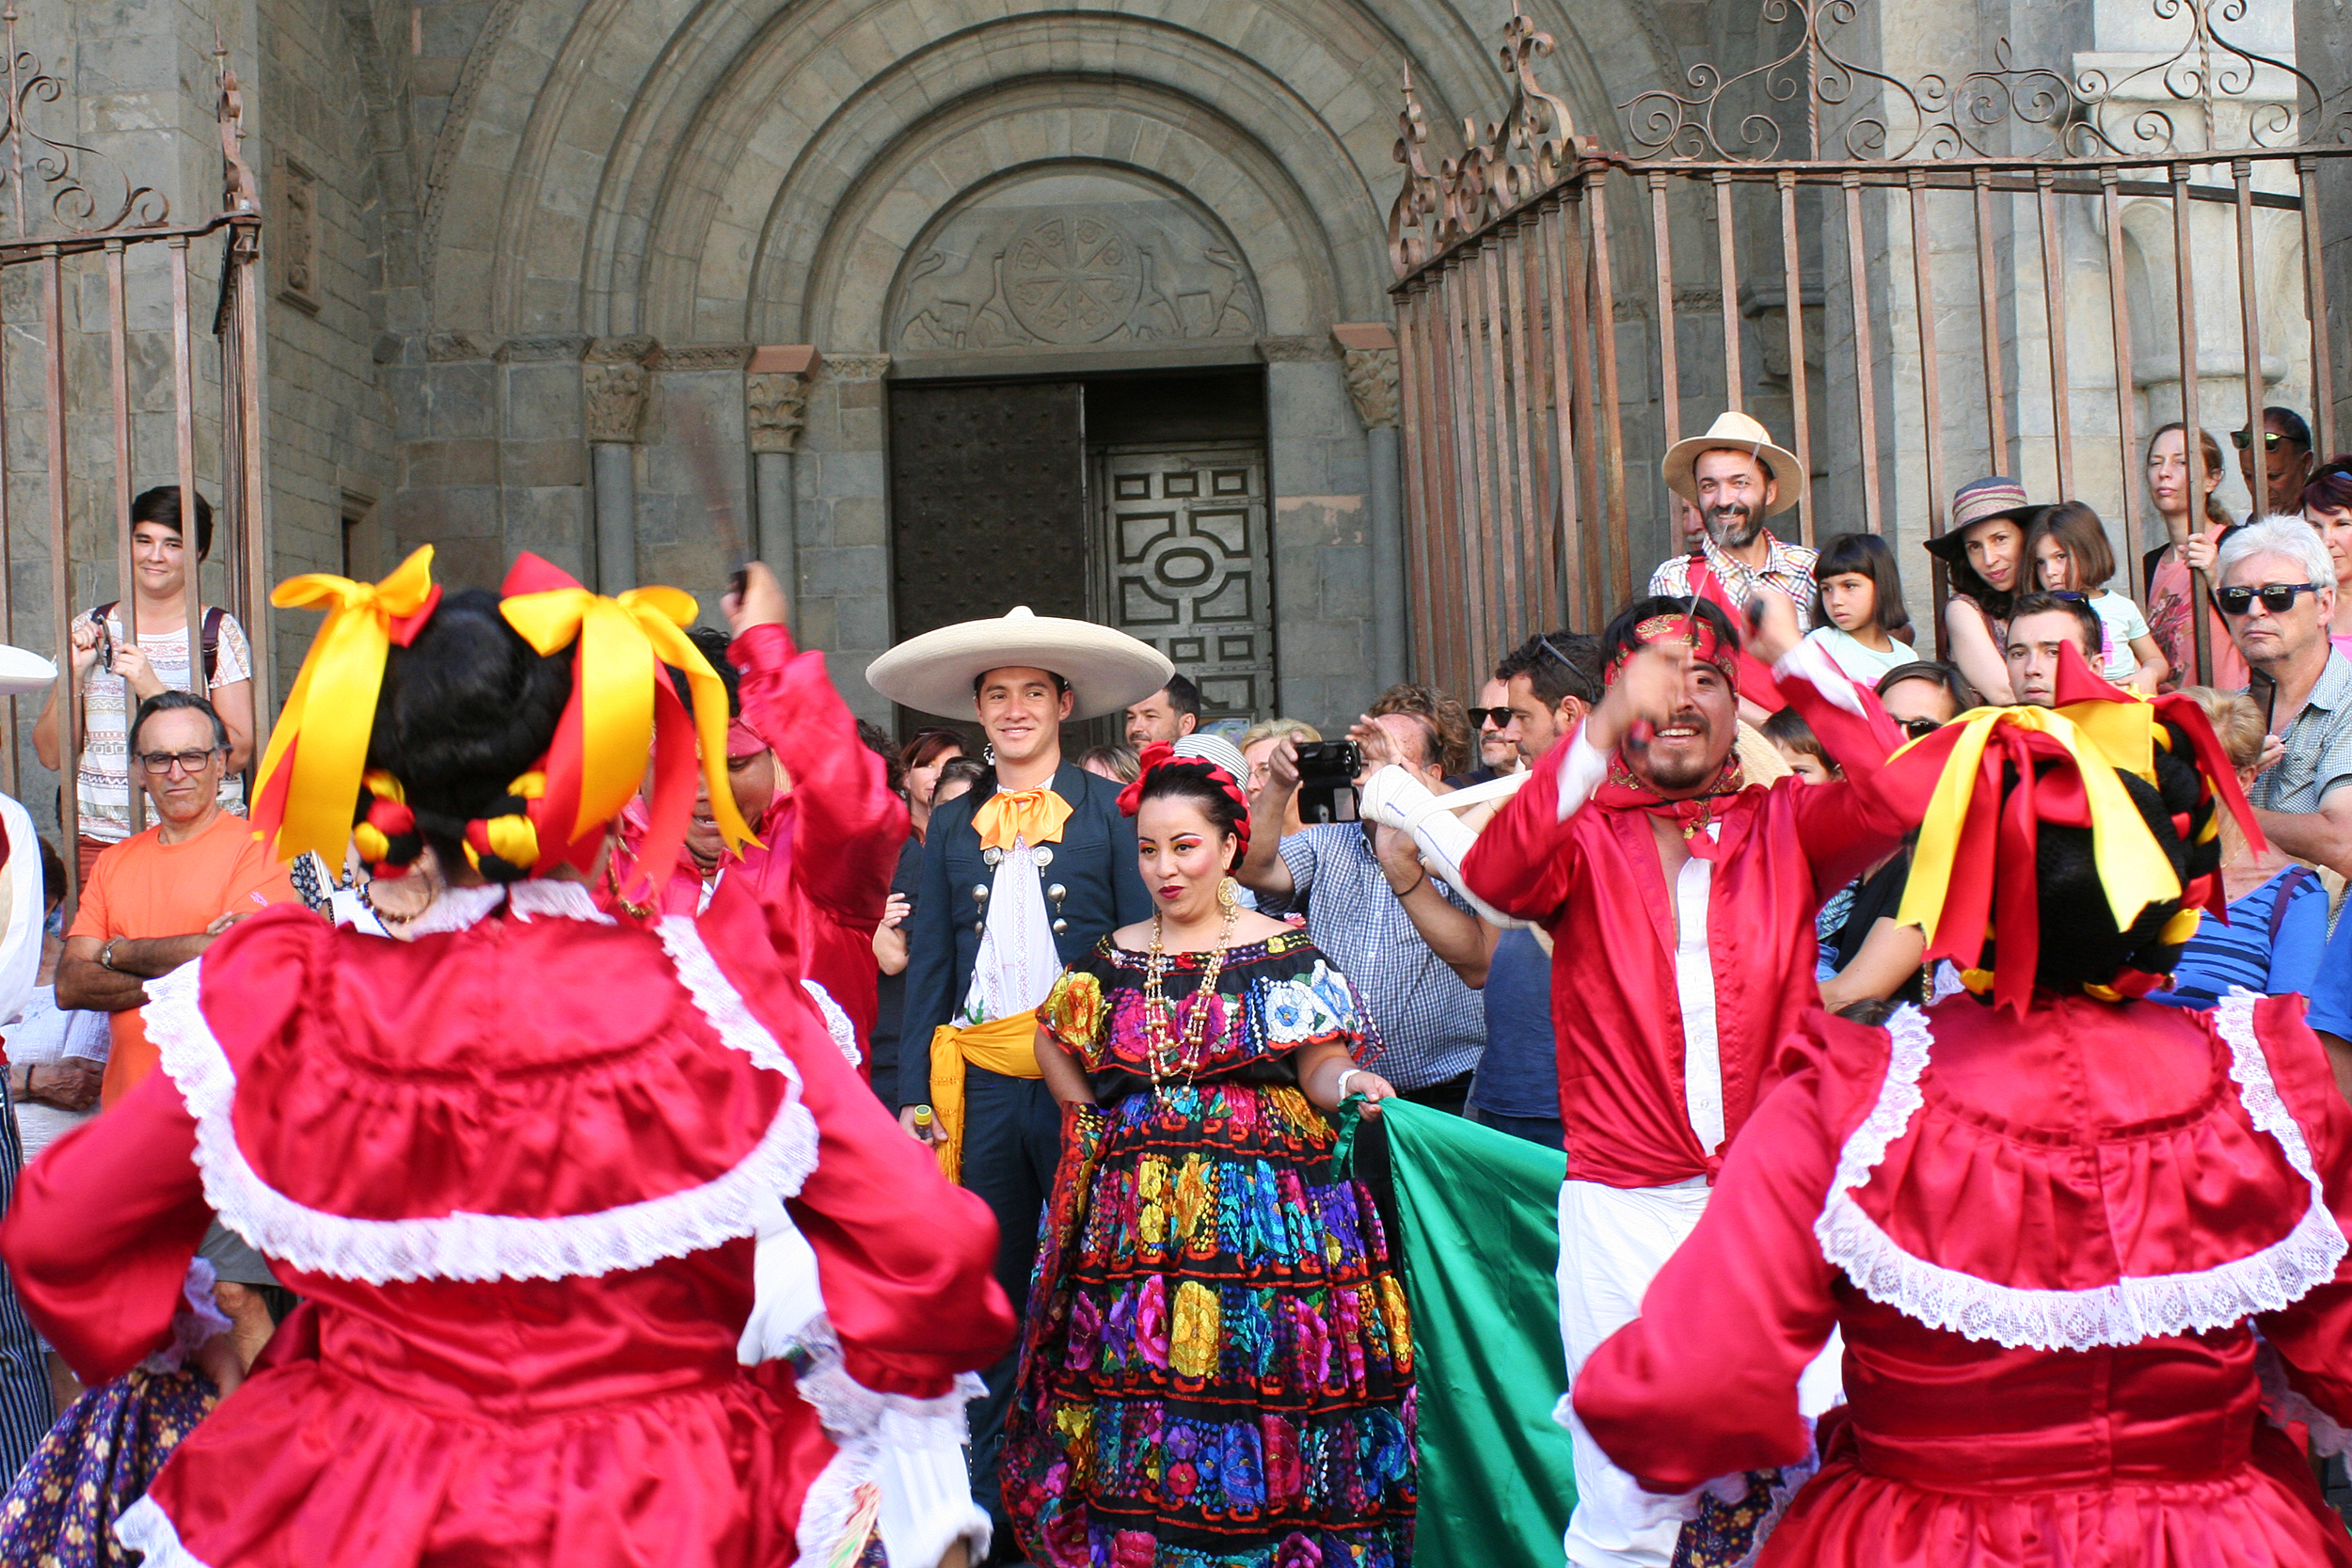 El Festival Folklórico de los Pirineos se presenta en FITUR